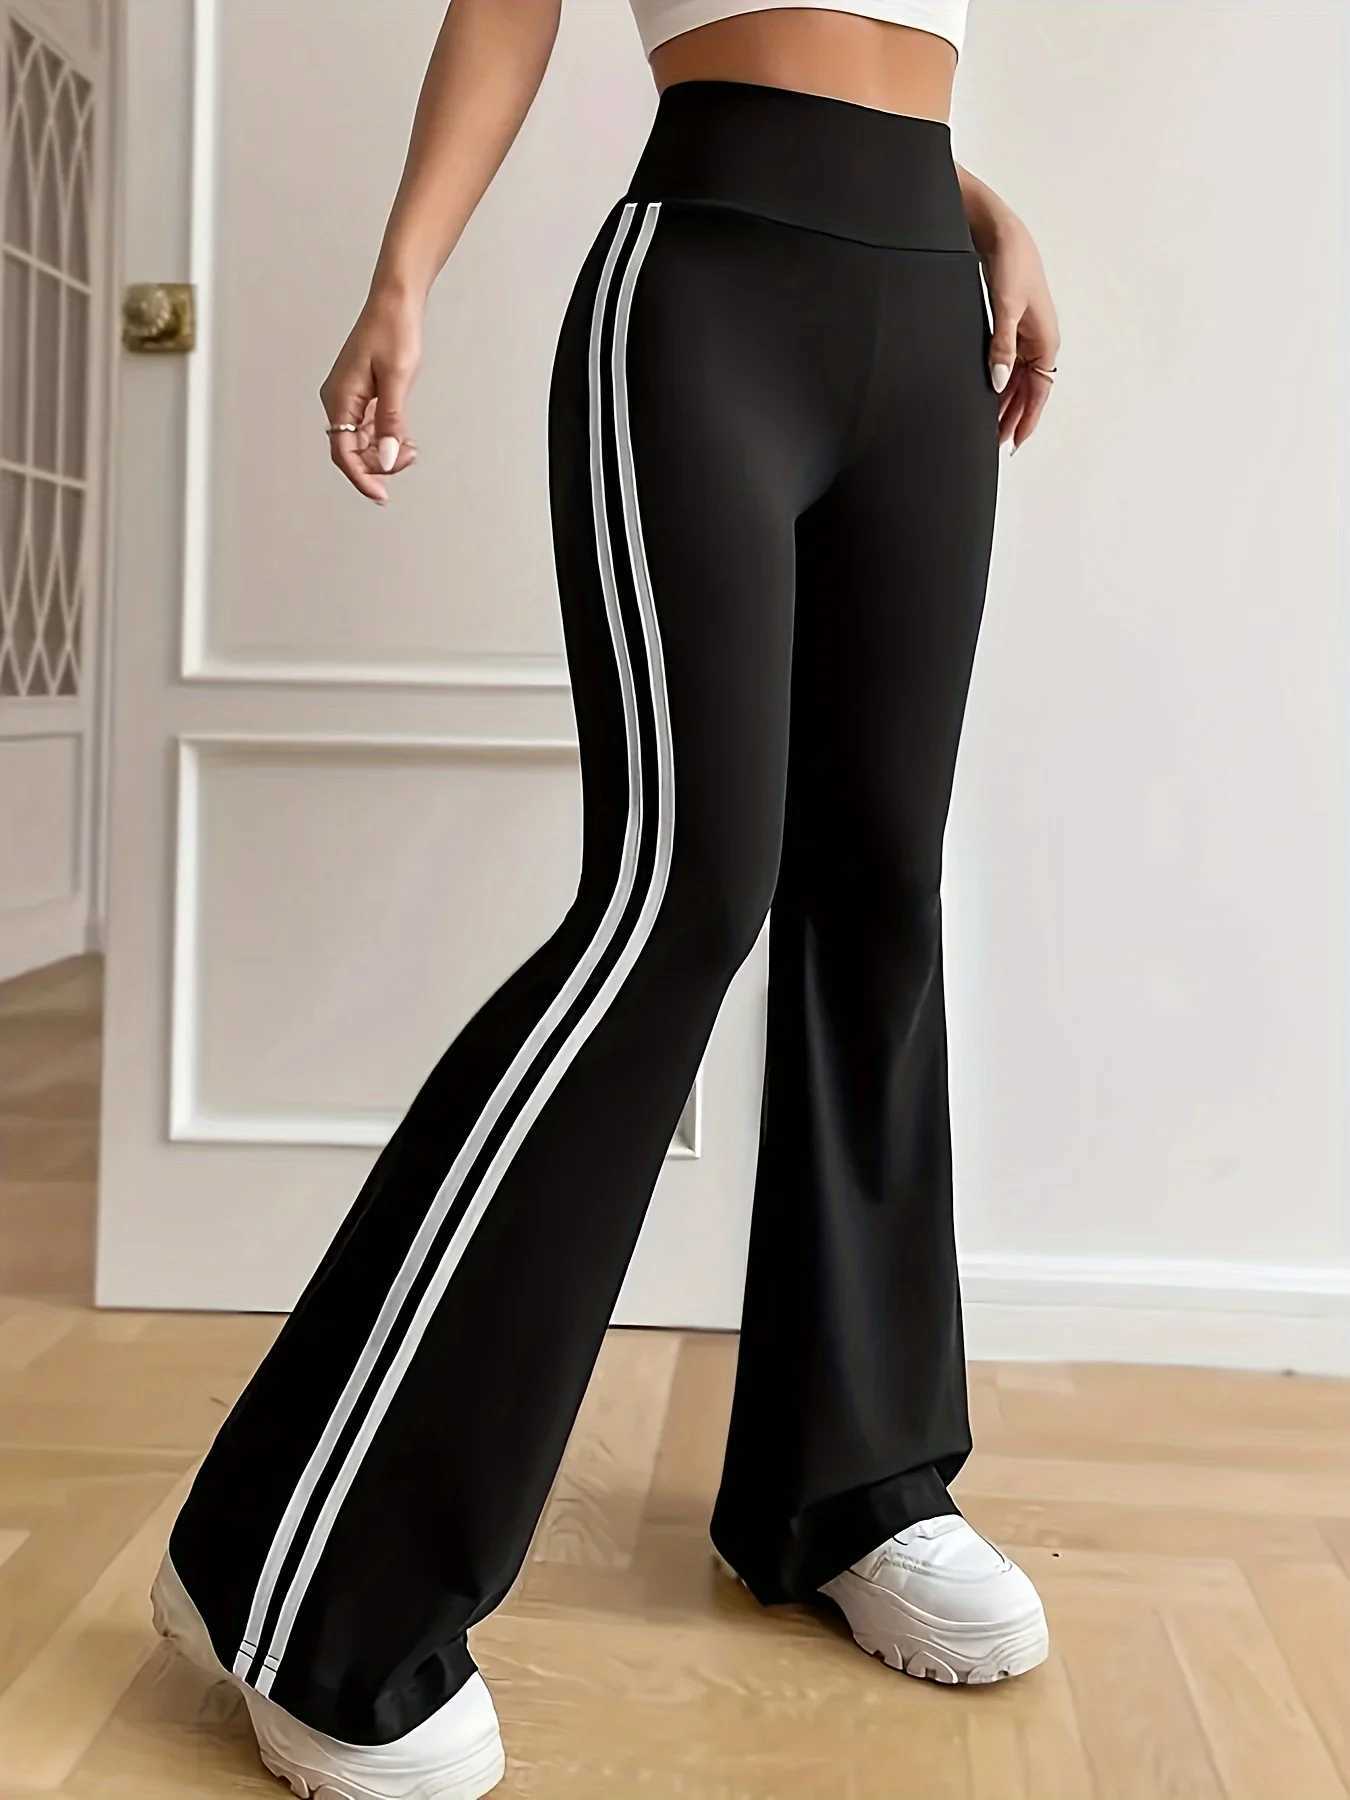 Pantaloni da donna Capris Nuova donna primavera/estate in tessuto elastico in stile elastico Design in stile britannico pantaloni flash nine pantaloni 240429